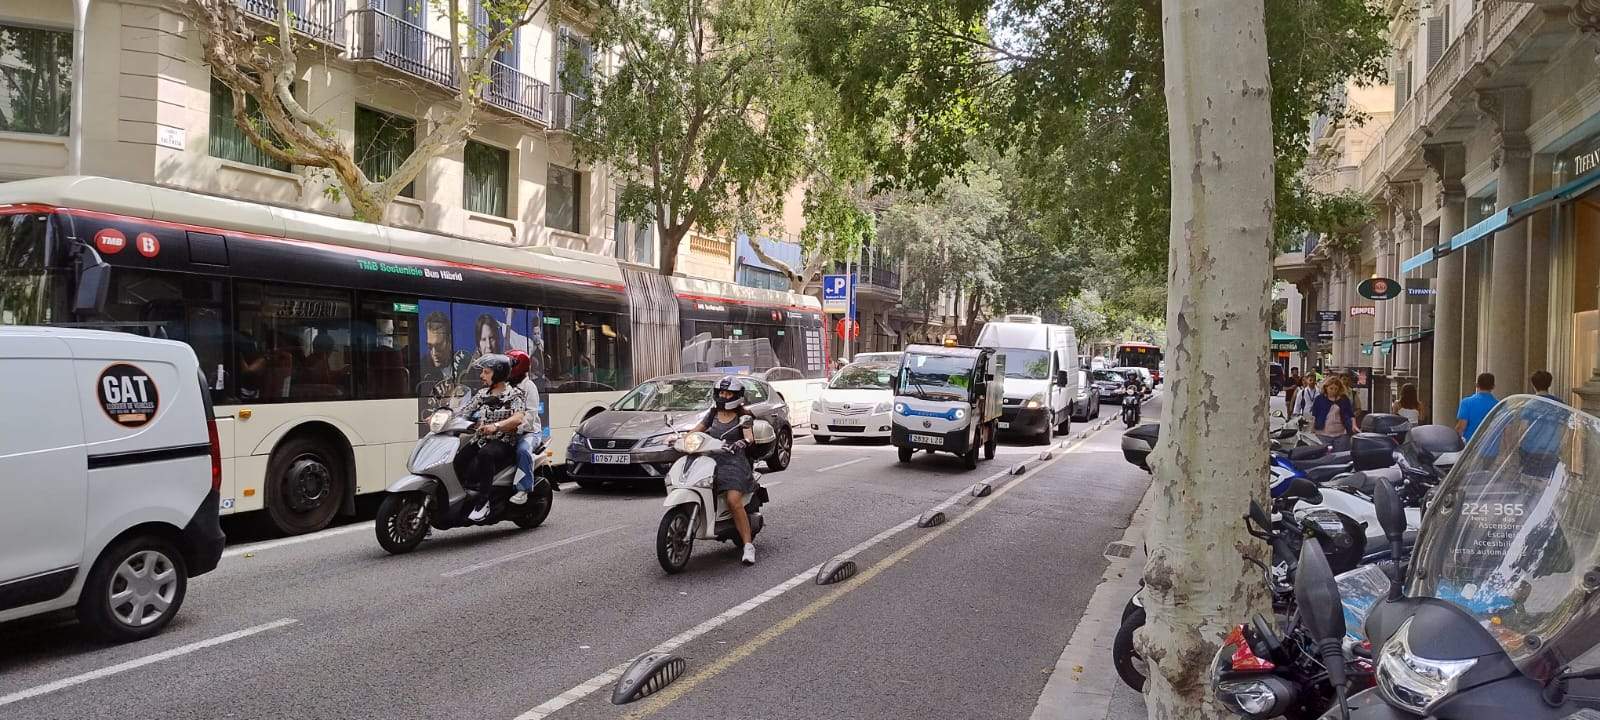 El 56% de usuarios de coche privado del entorno de Barcelona no encuentran alternativa en transporte público